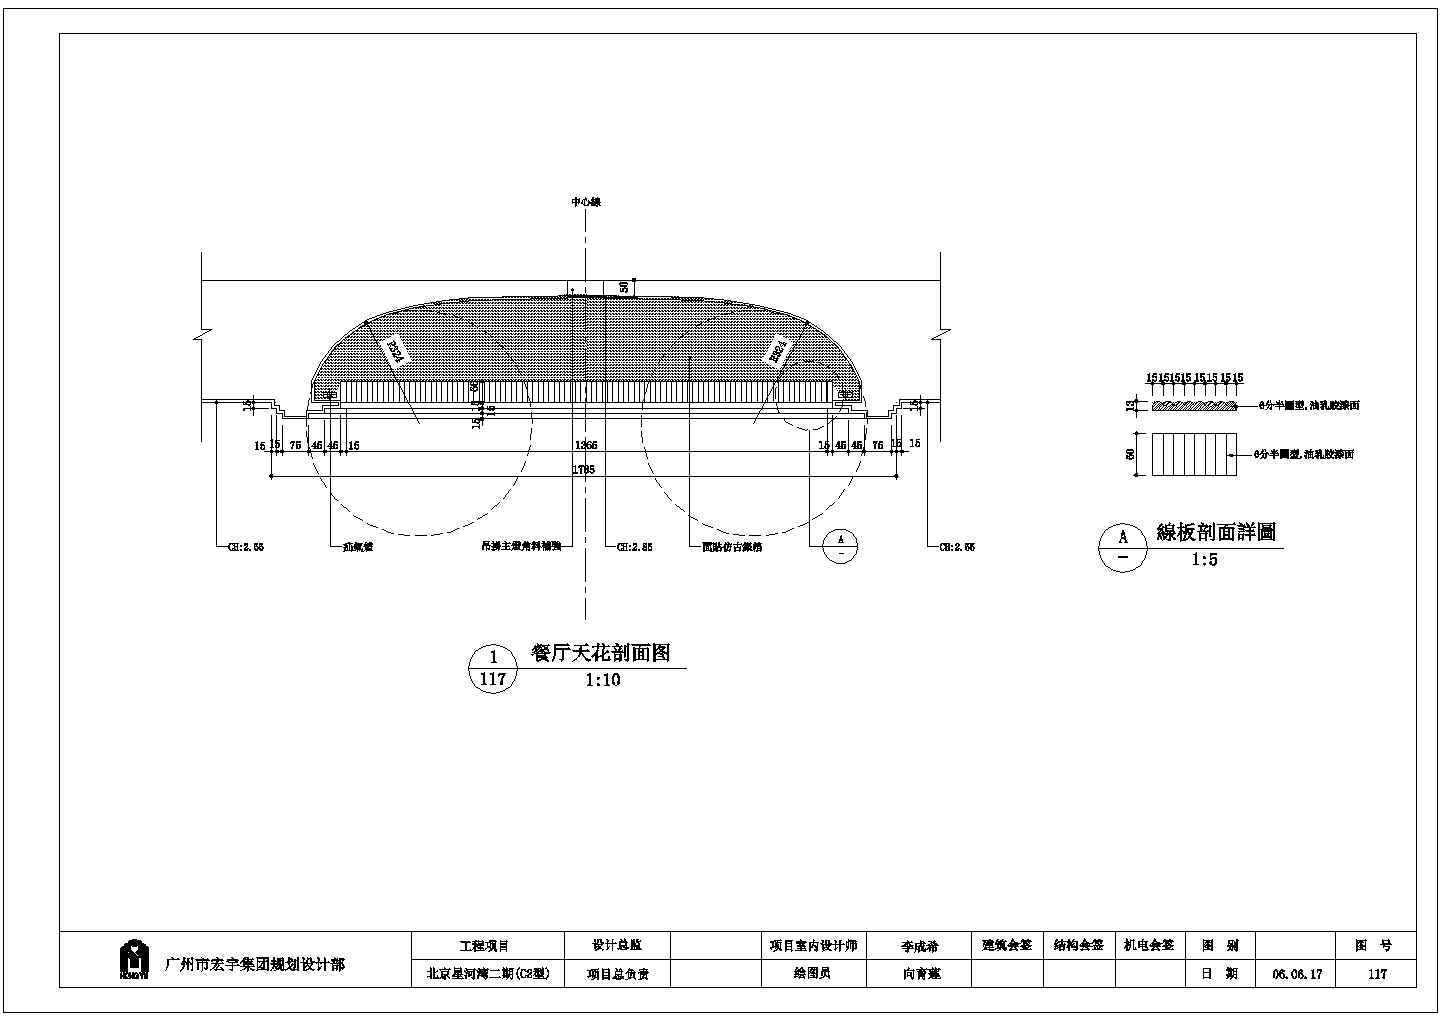 北京星河湾二期(C2型)脚线详细建筑施工图